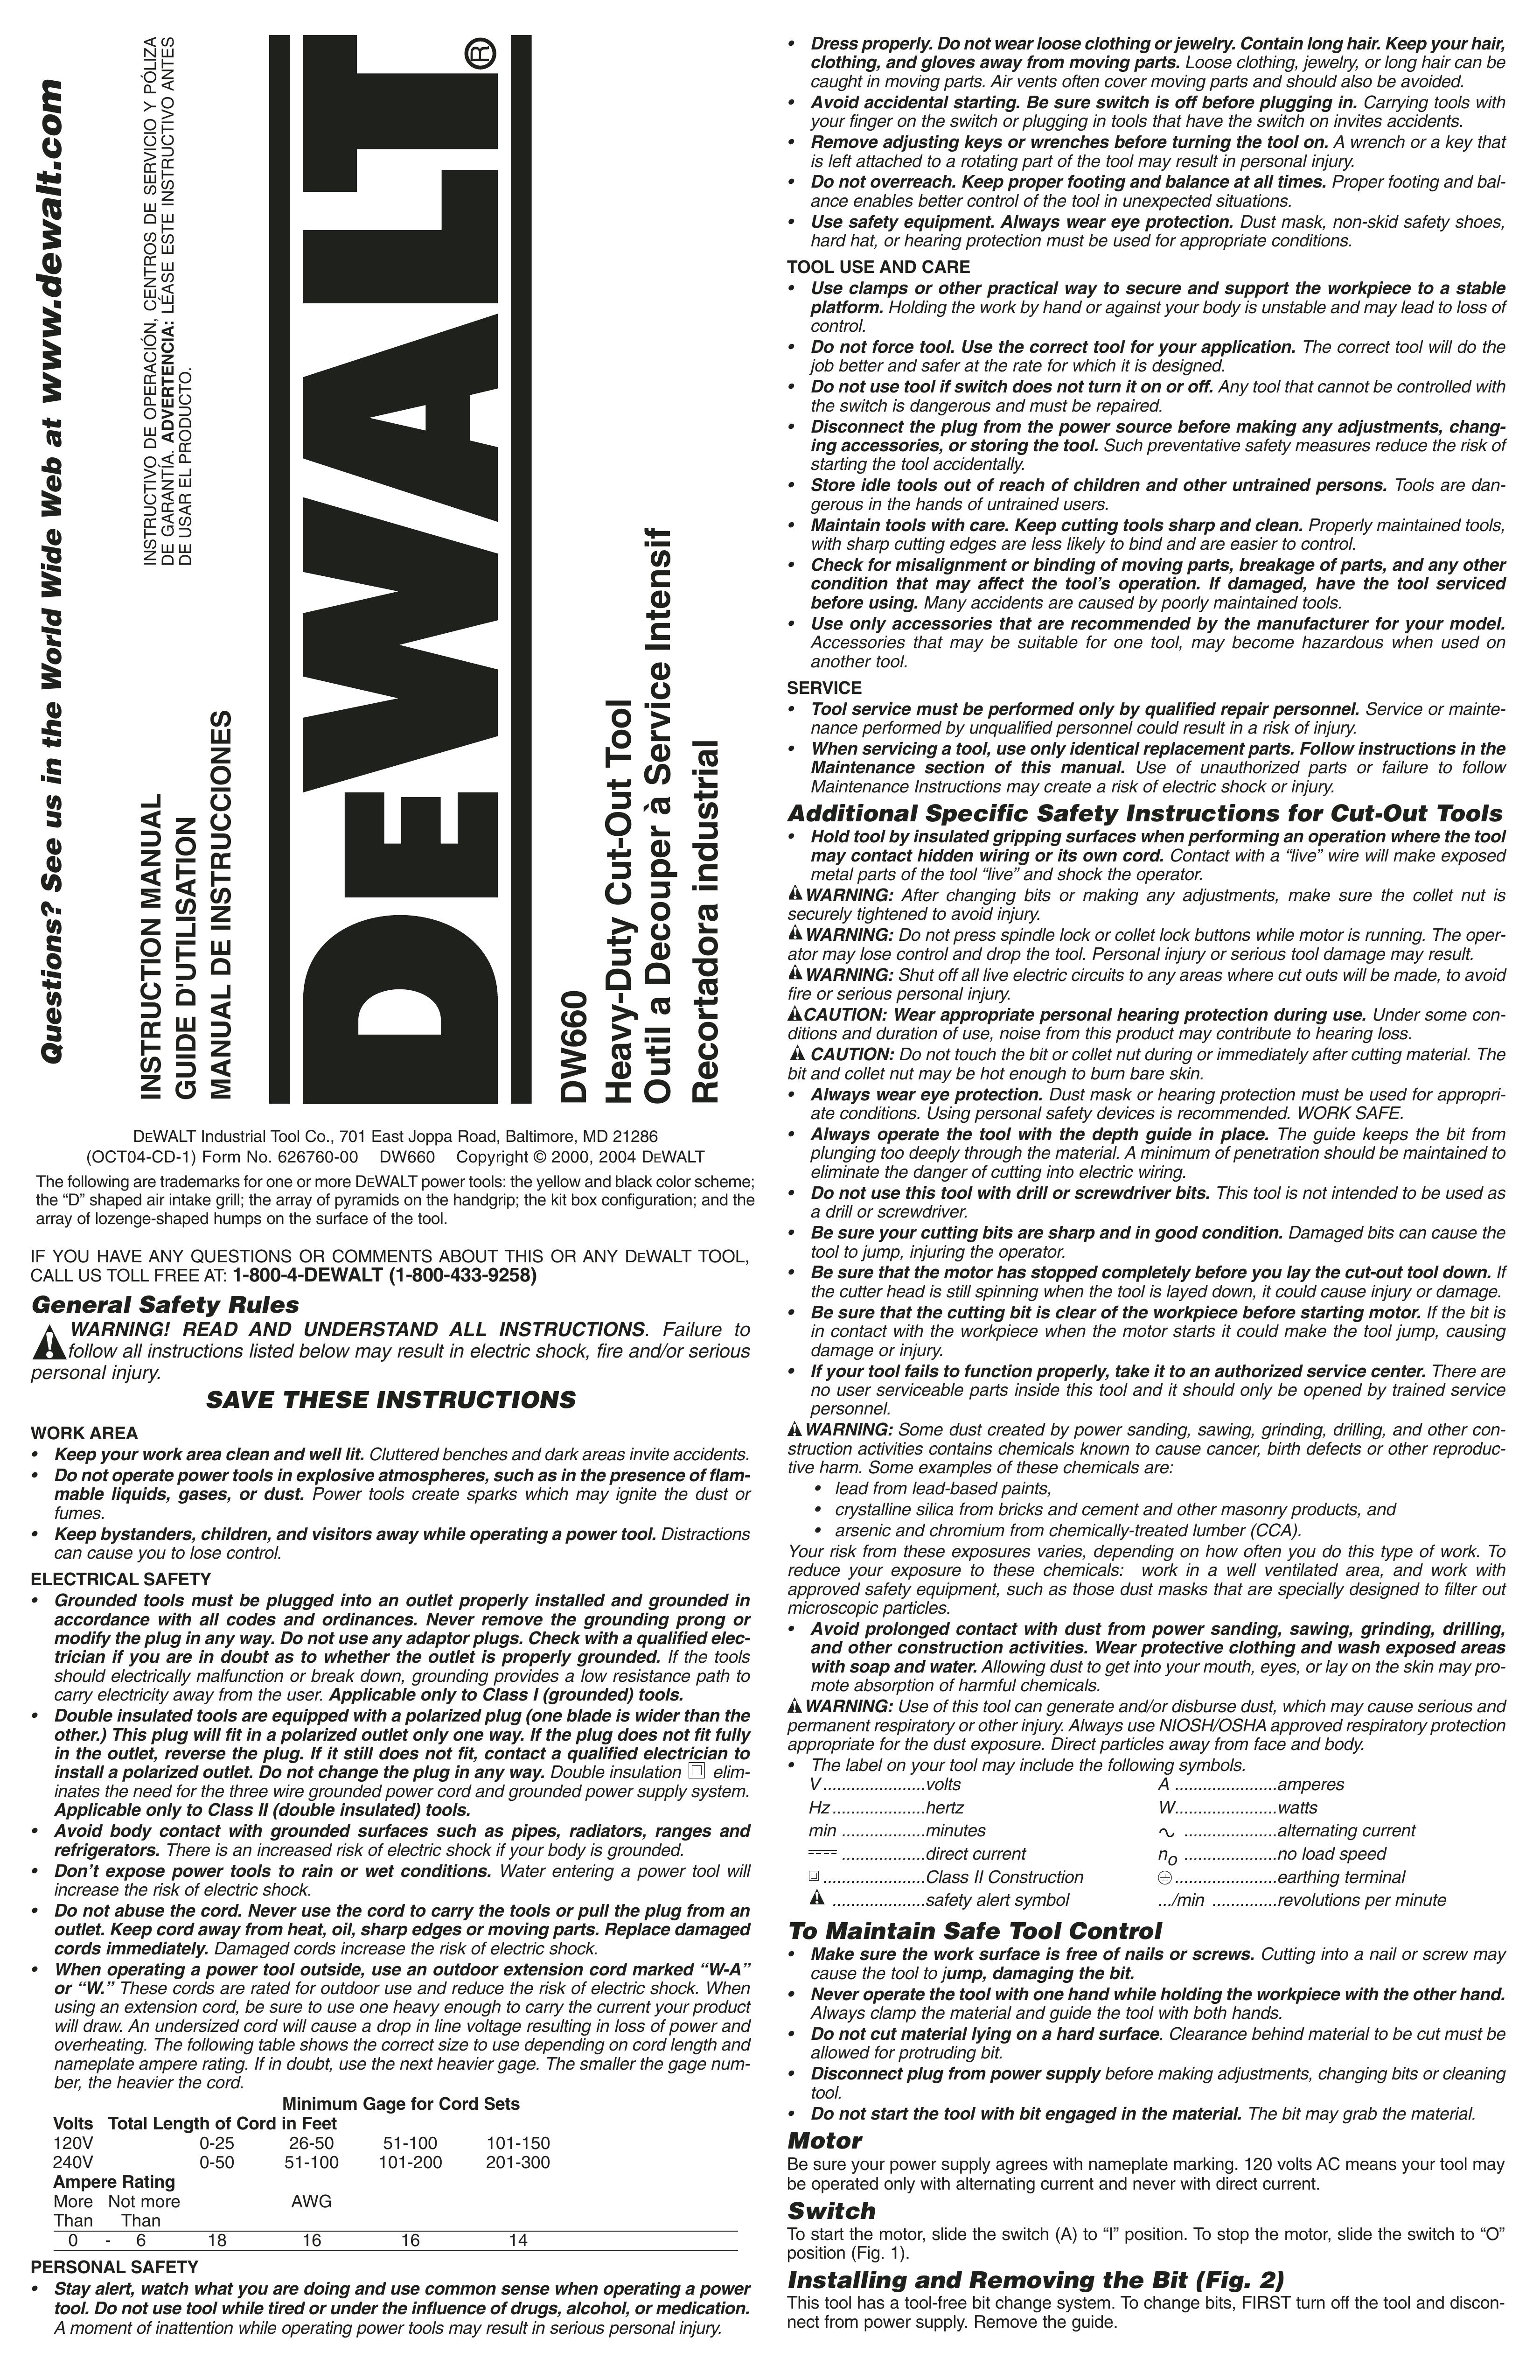 DeWalt DW660 Brush Cutter User Manual